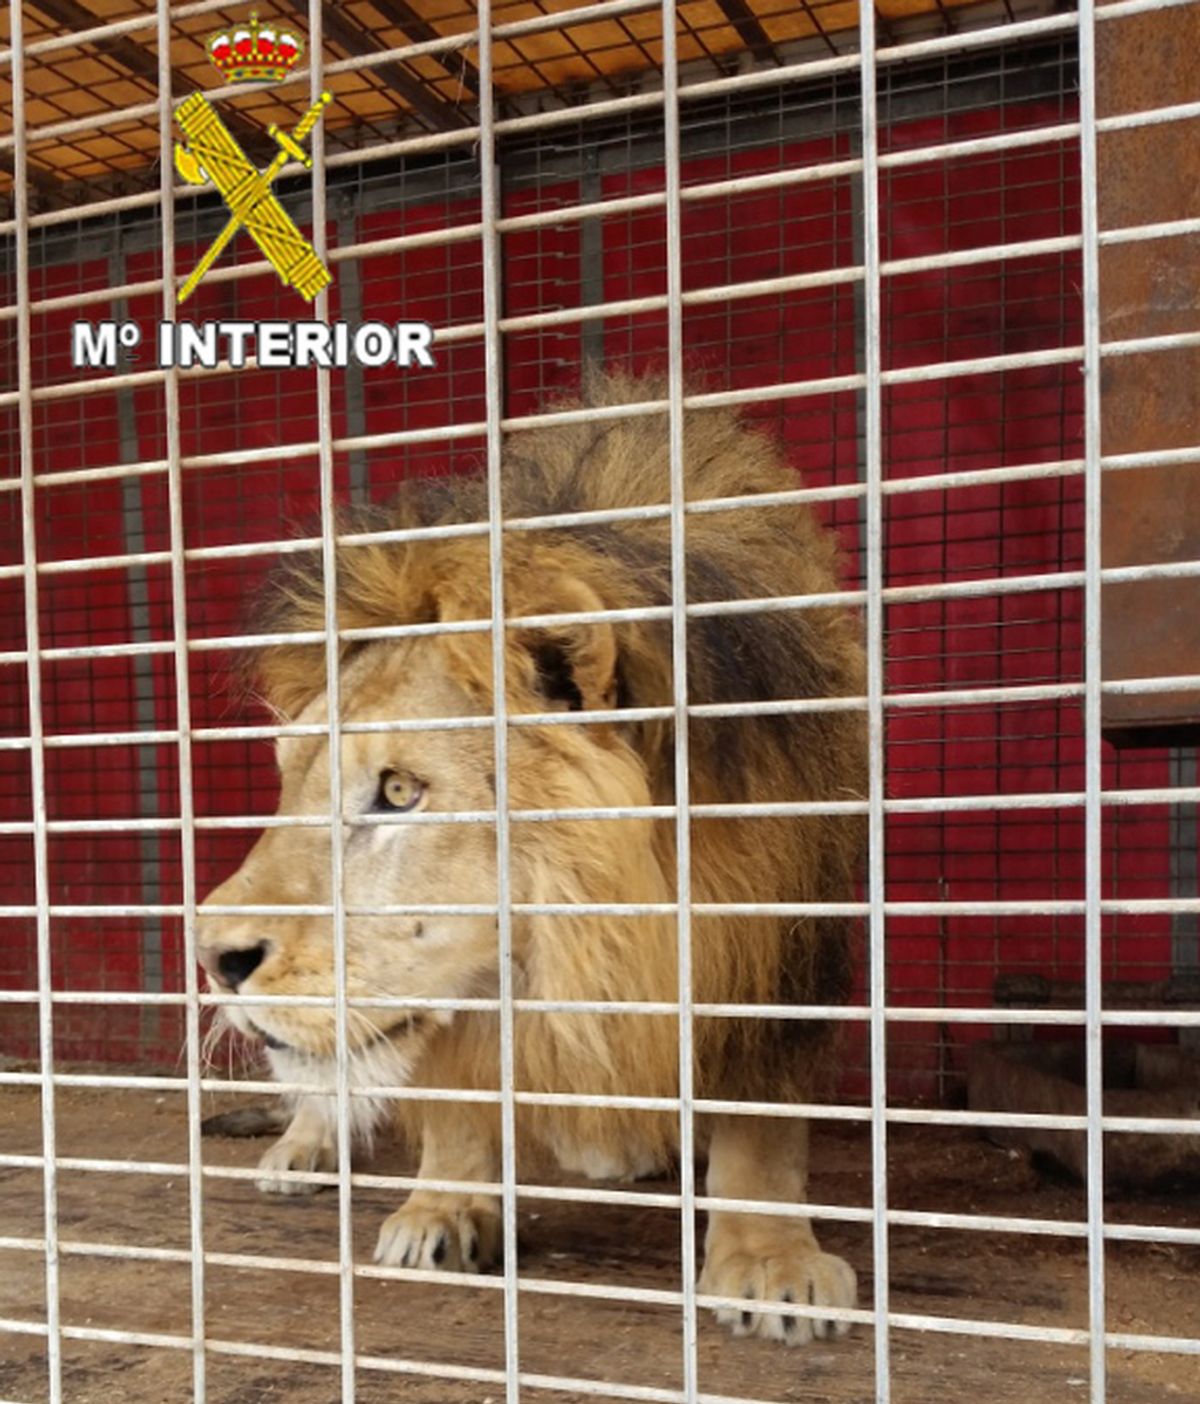 La Guardia Civil interviene 2 leones y 1 pantera en una operación contra el tráfico ilegal de animales